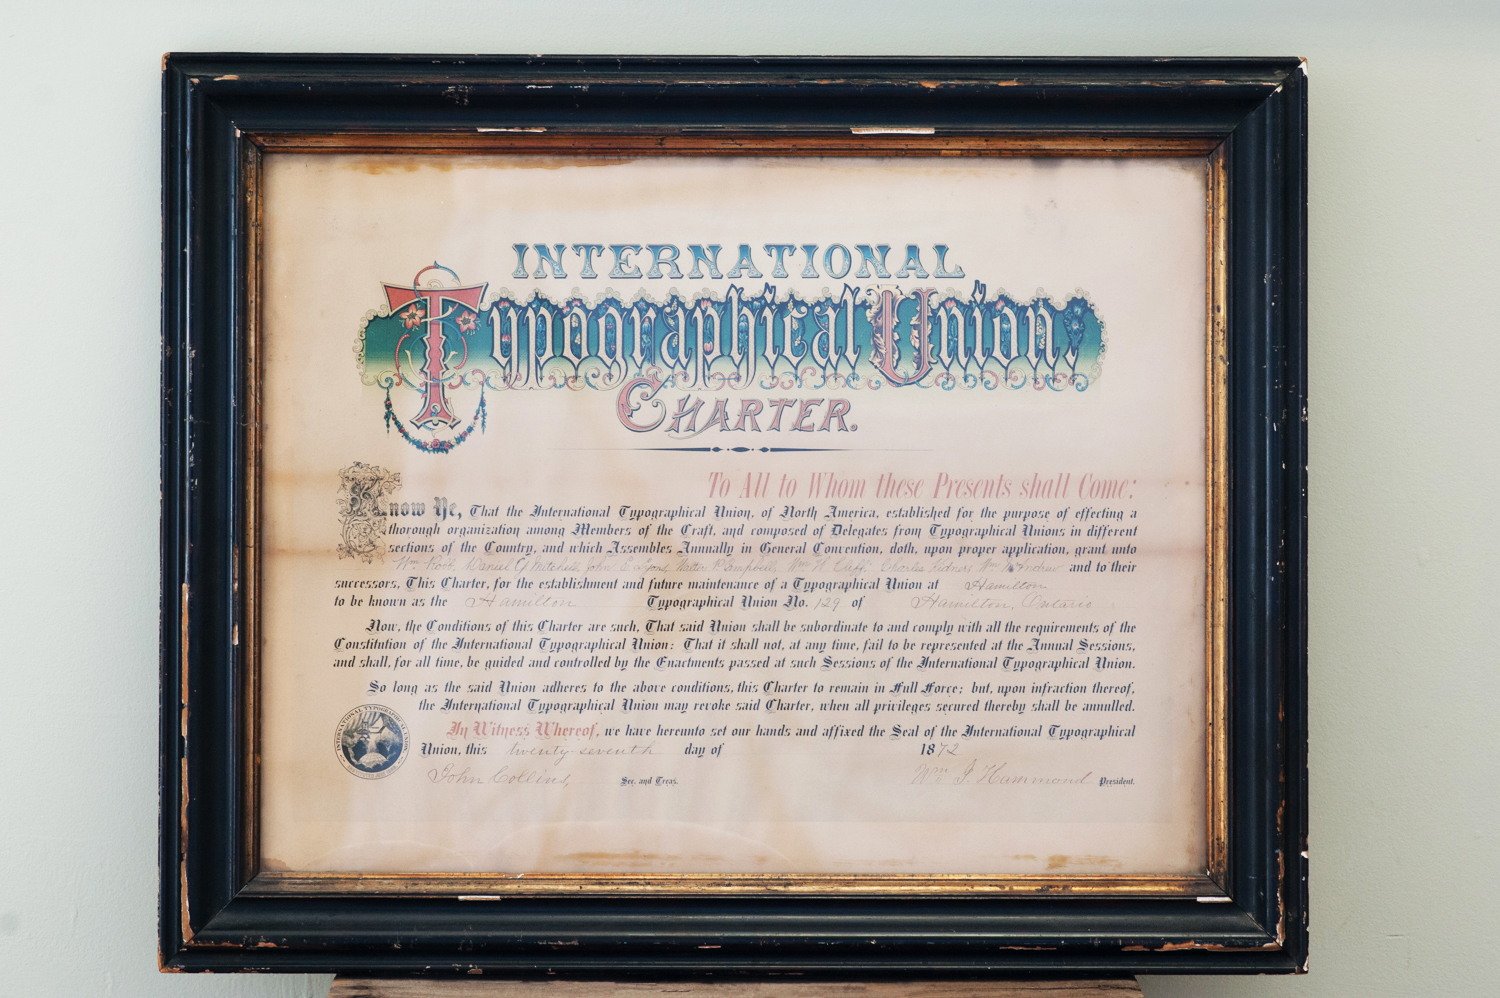 Photographie de la charte de l’International Typographical Union (syndicat international du secteur typographique) datant de 1872. La charte signée en papier utilise une calligraphie classique et est enserrée dans un cadre en verre et en bois.